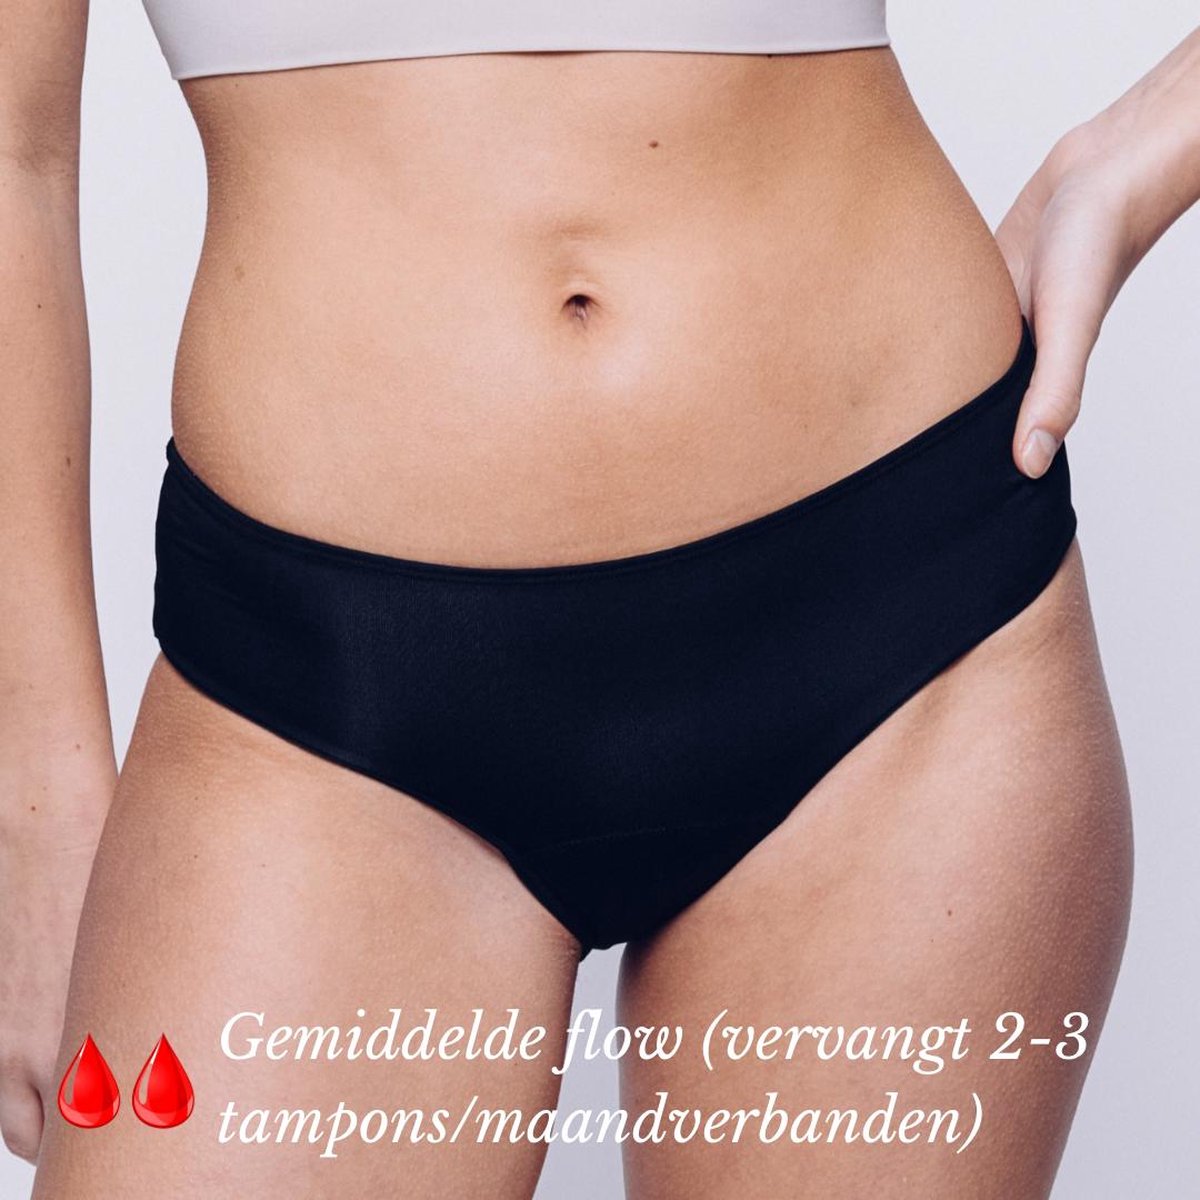 Menstruatie Ondergoed - Period Underwear - Menstruatieslip - Menstruatie Onderbroekje - M - Classic - MyFleury®